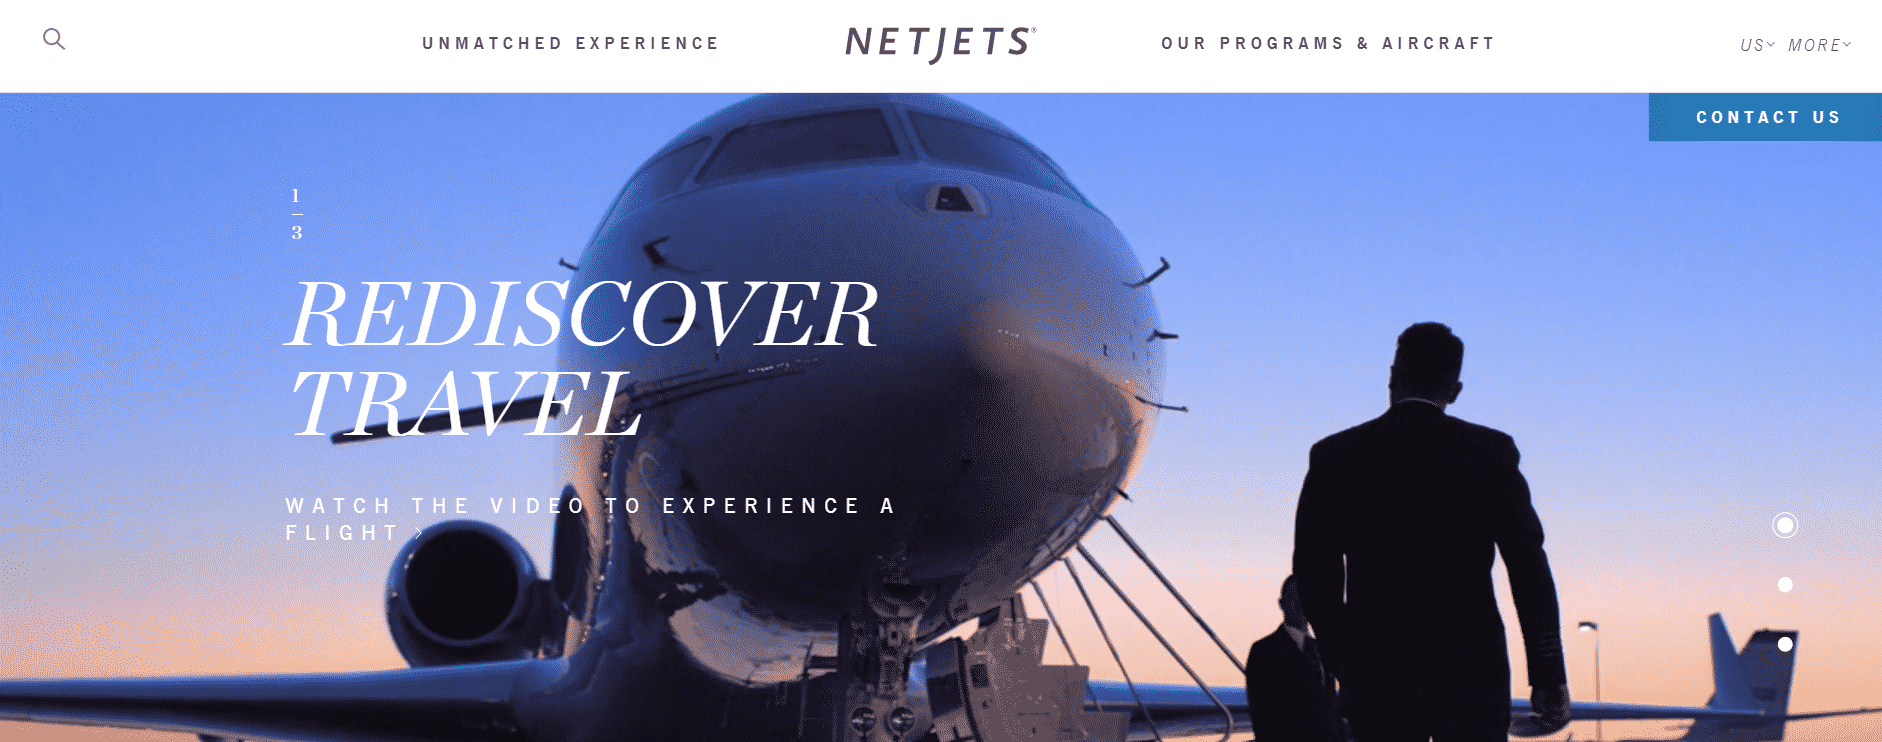 Private jet memberships: NetJets